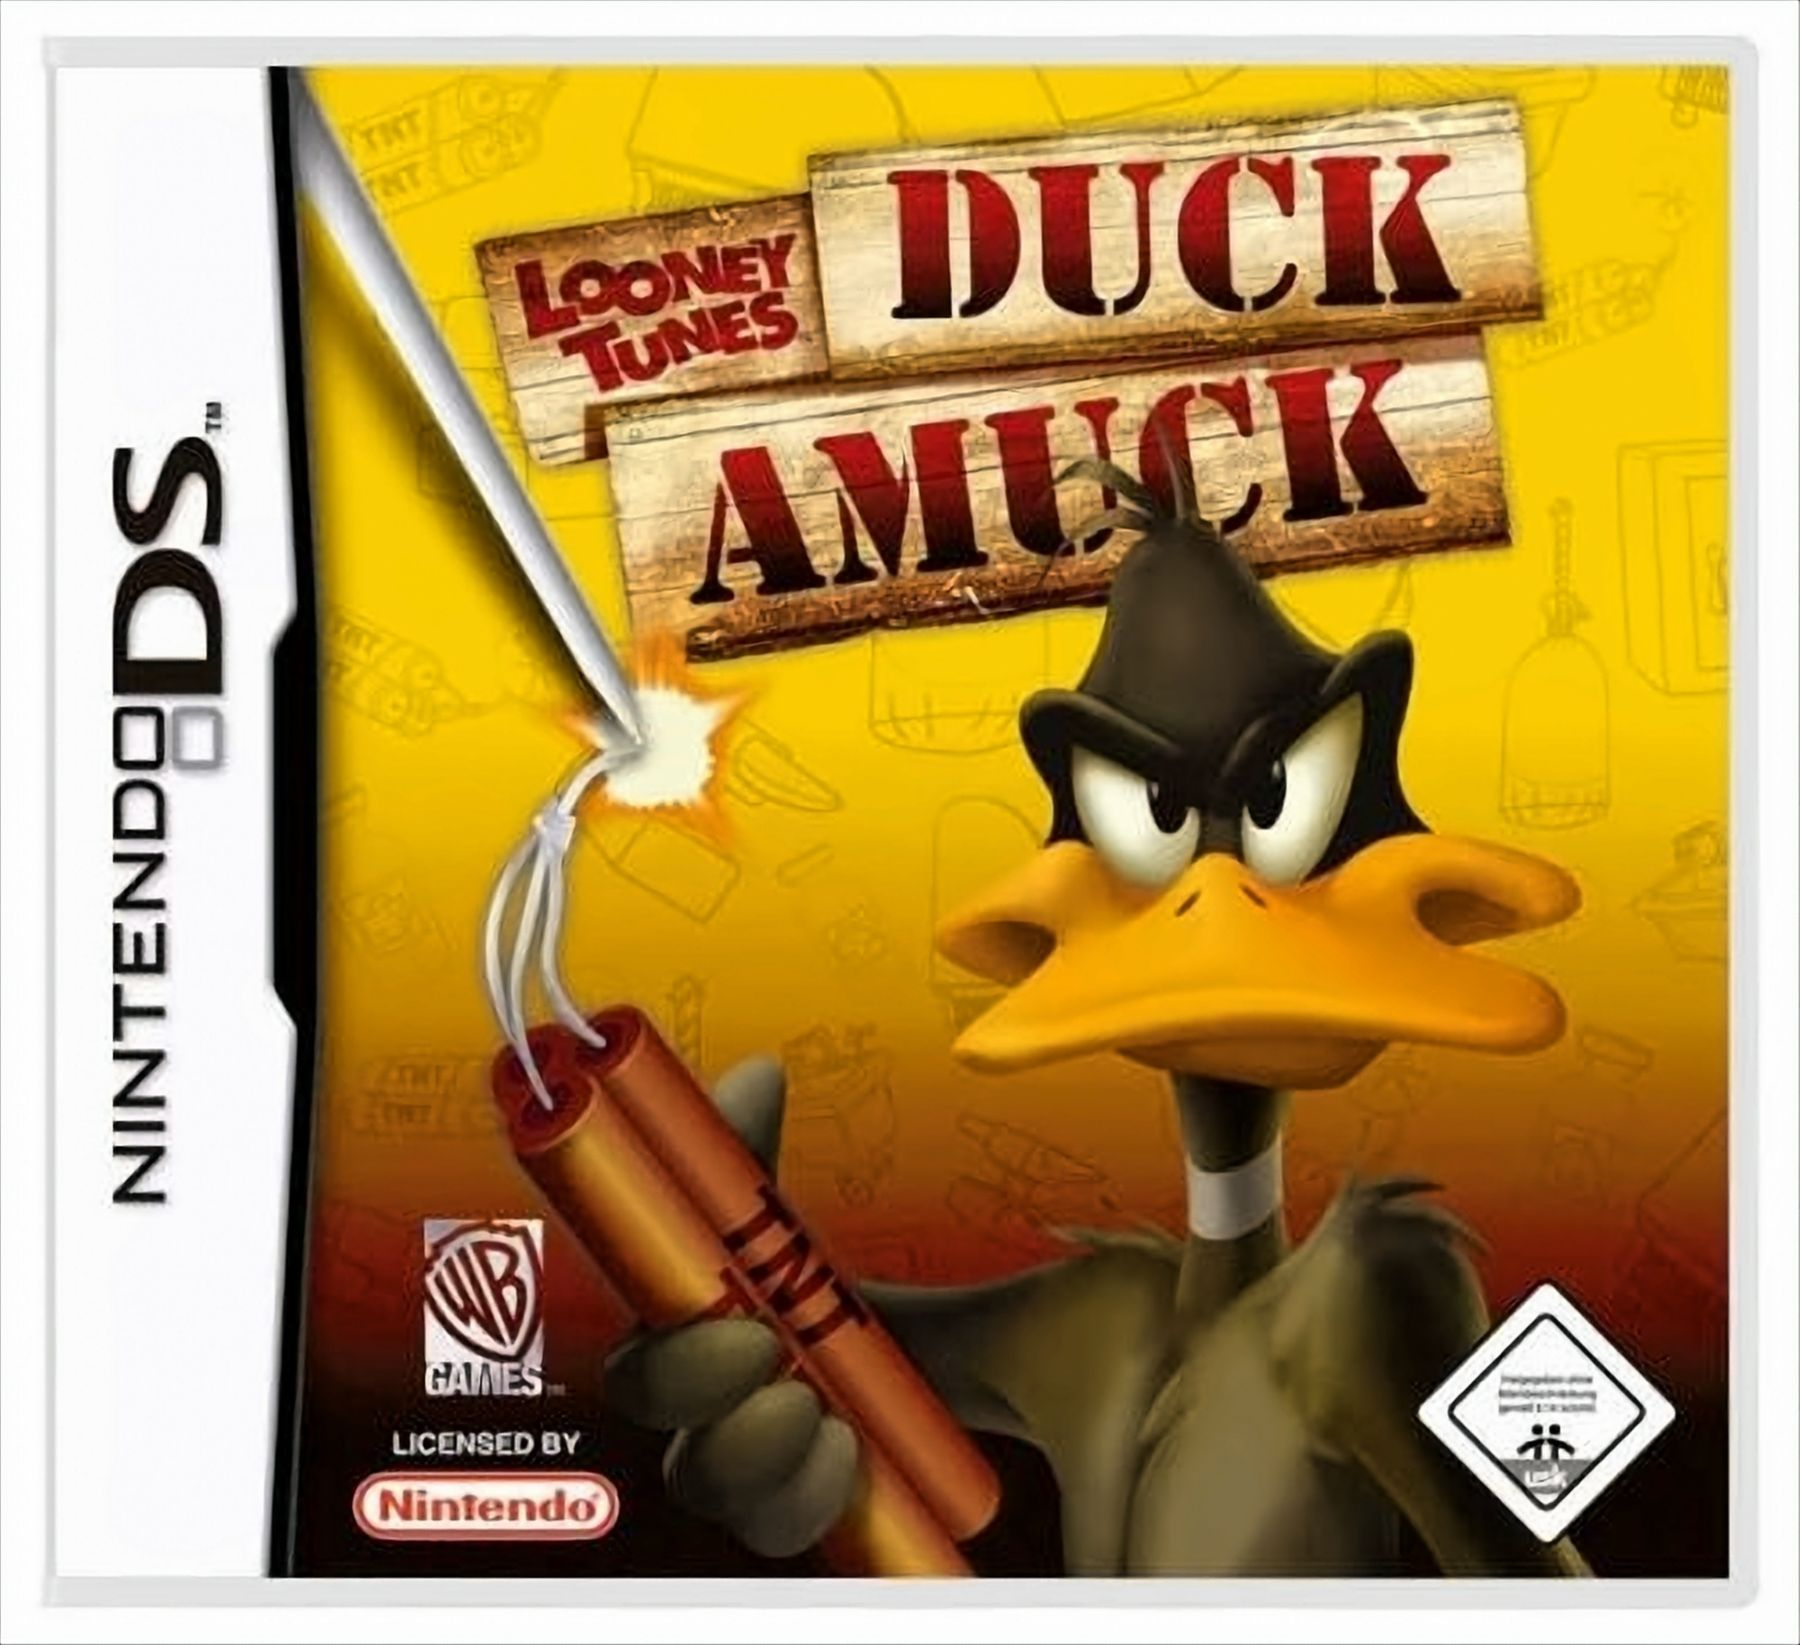 Tunes Looney - Amuck - Duck [Nintendo DS]